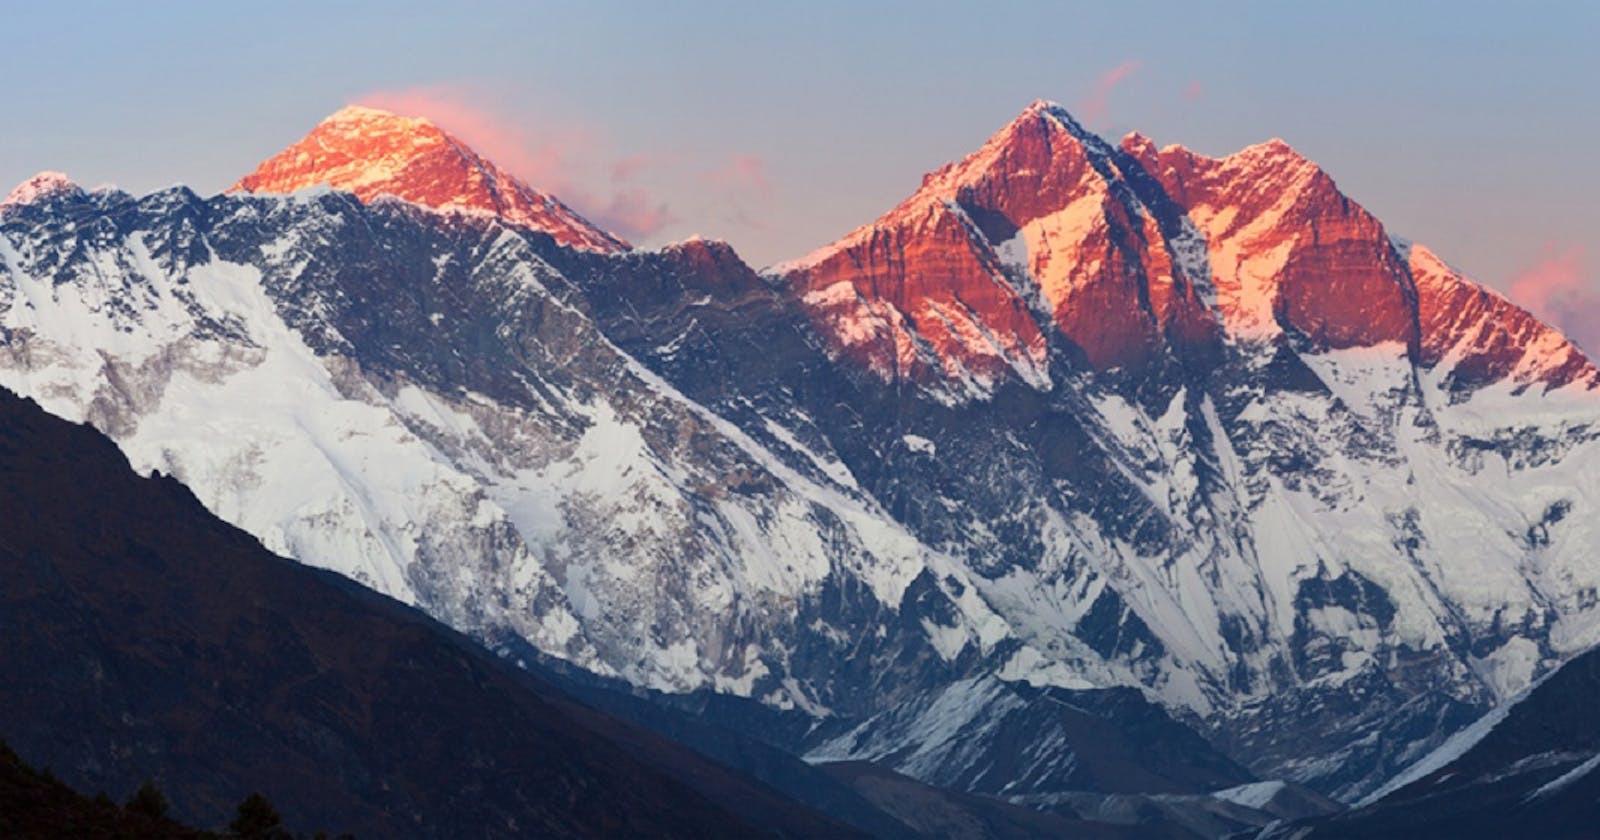 Everest 3 passes trek Nepal